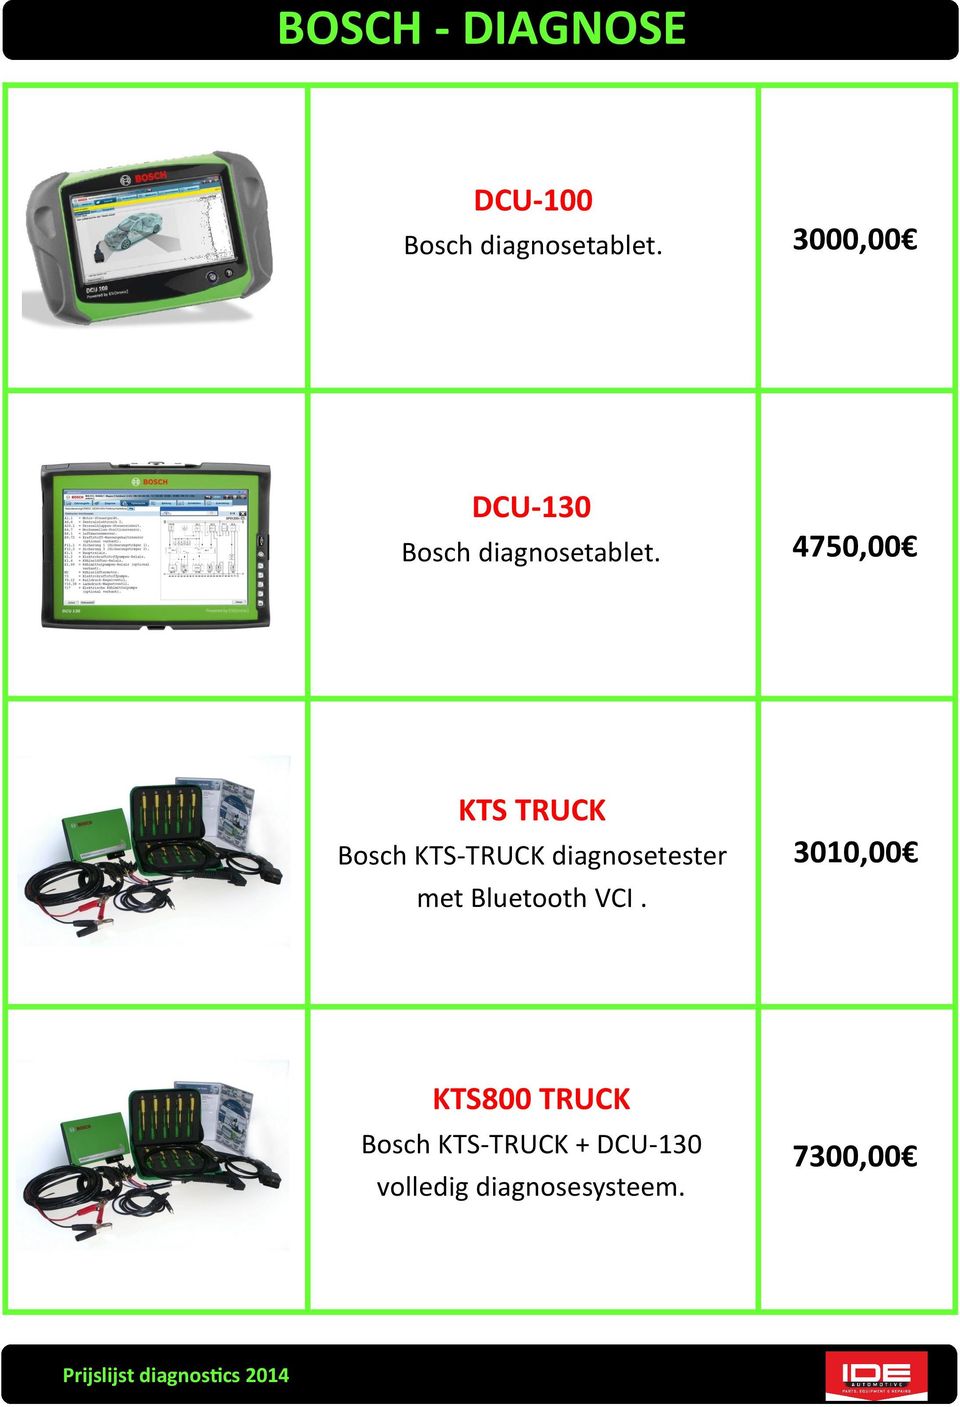 4750,00 KTS TRUCK Bosch KTS-TRUCK diagnosetester met